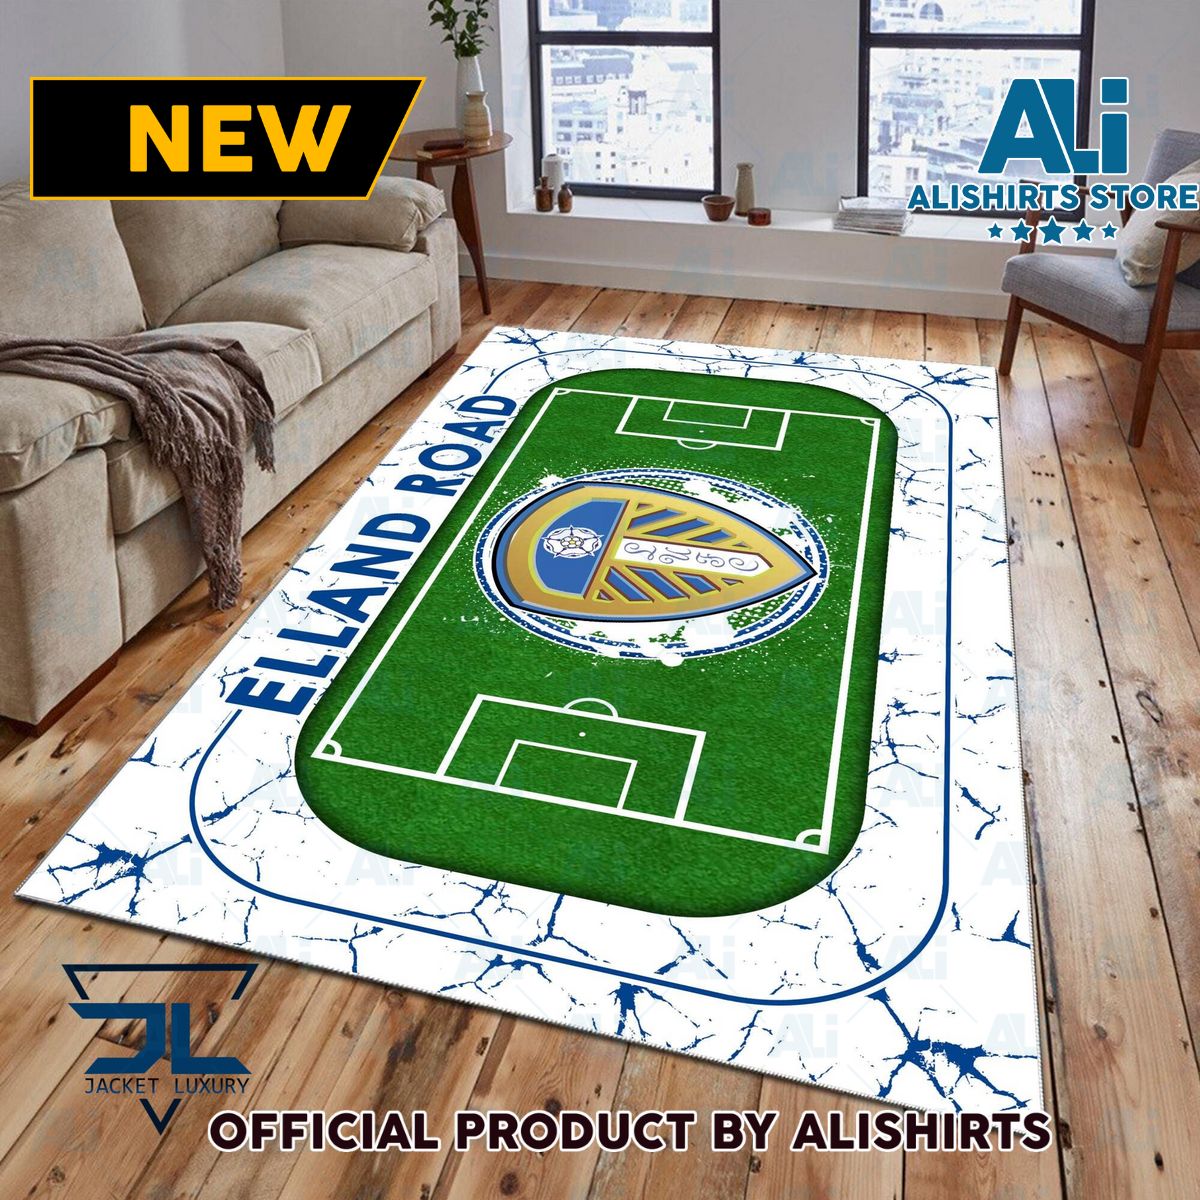 Leeds United FC EPL Team Rug Carpet